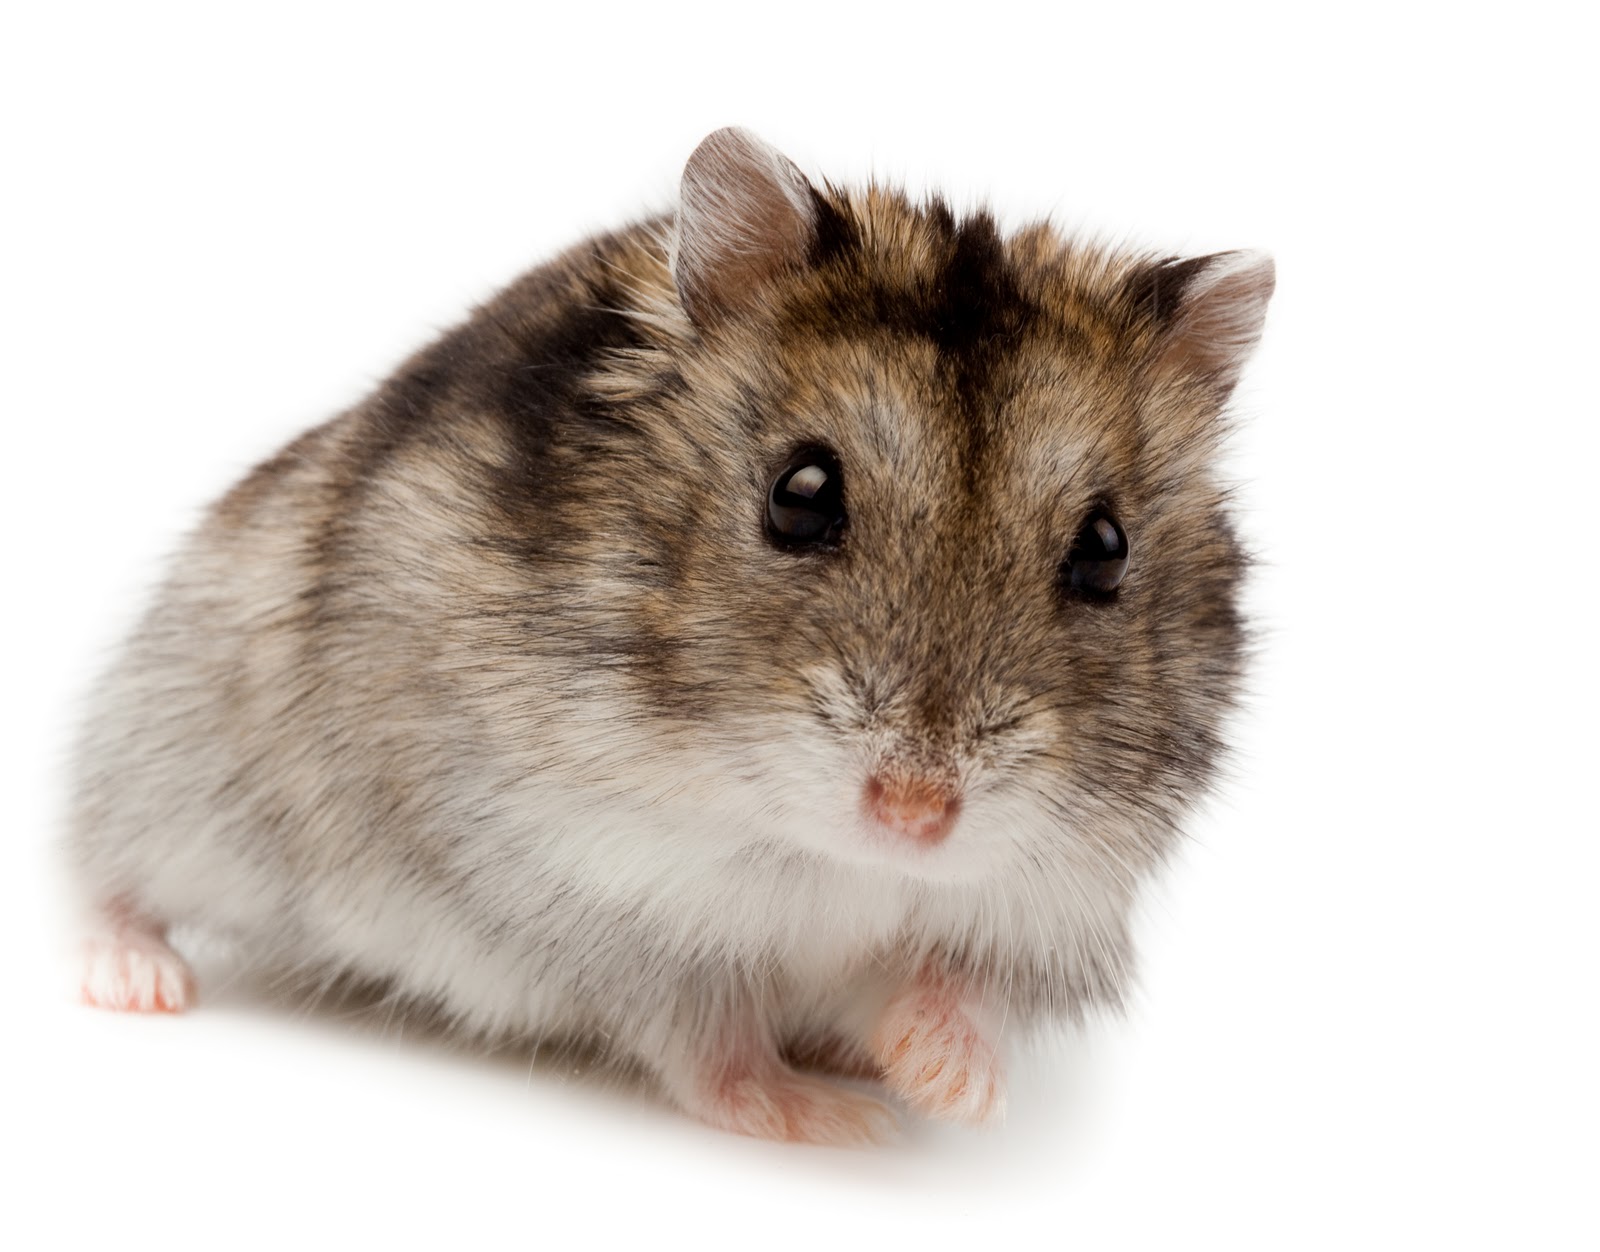 Tentación Ciro Descarga Hamstercitos :3: Hamster Enano Ruso (Phodopus sungorus)